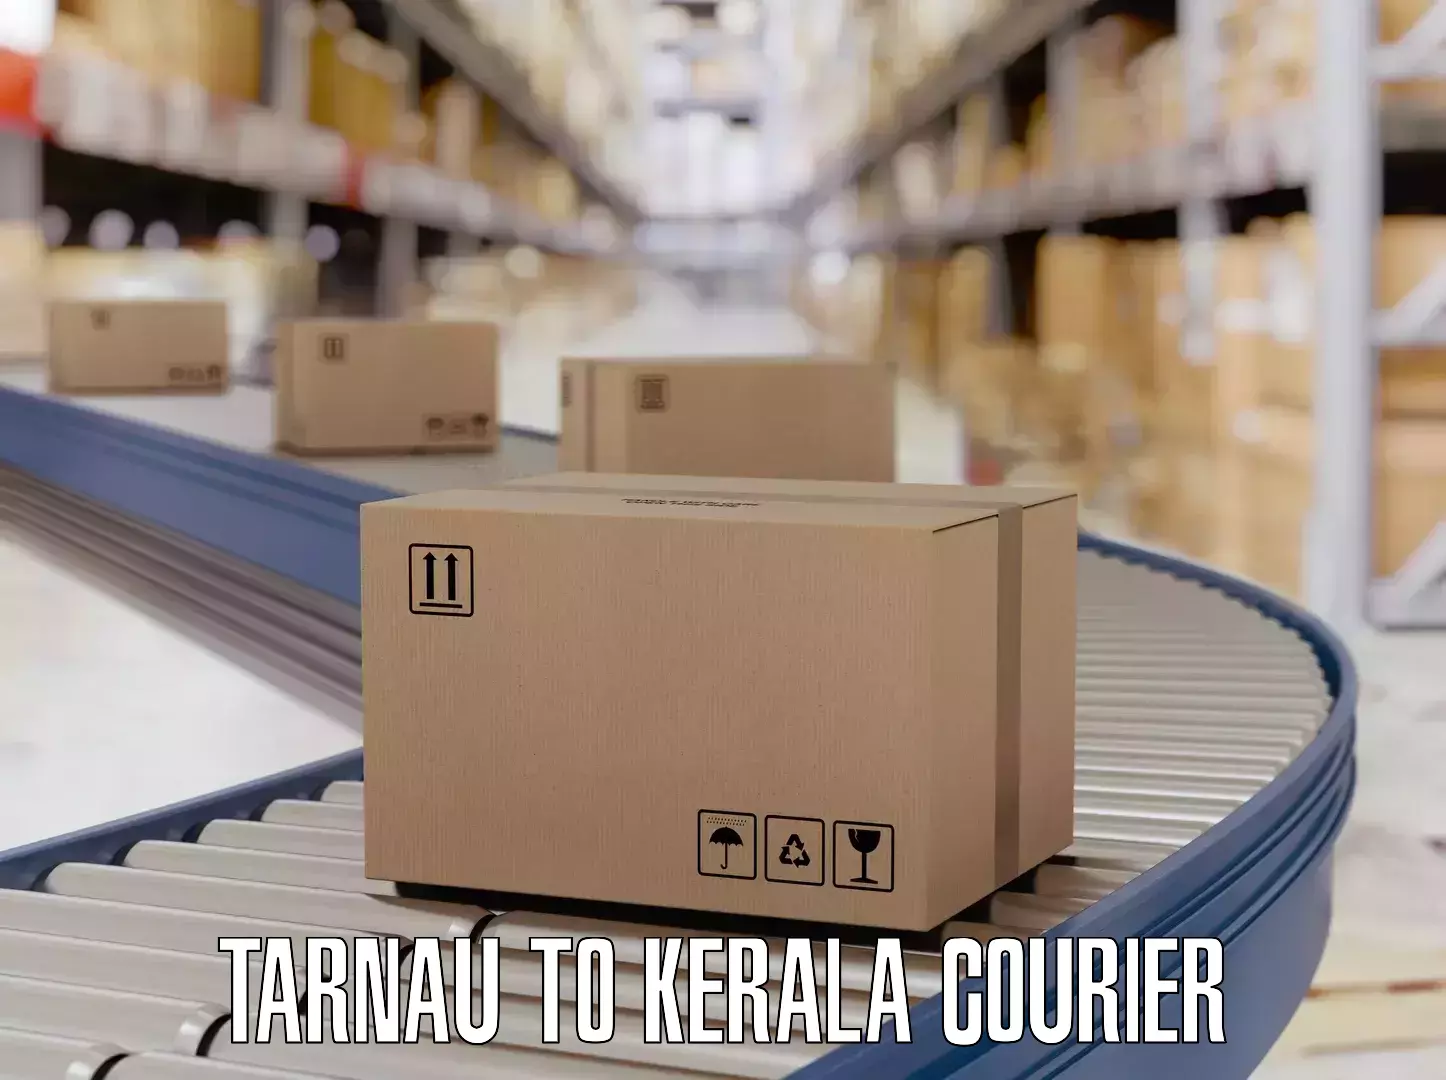 Baggage shipping experience Tarnau to Kerala